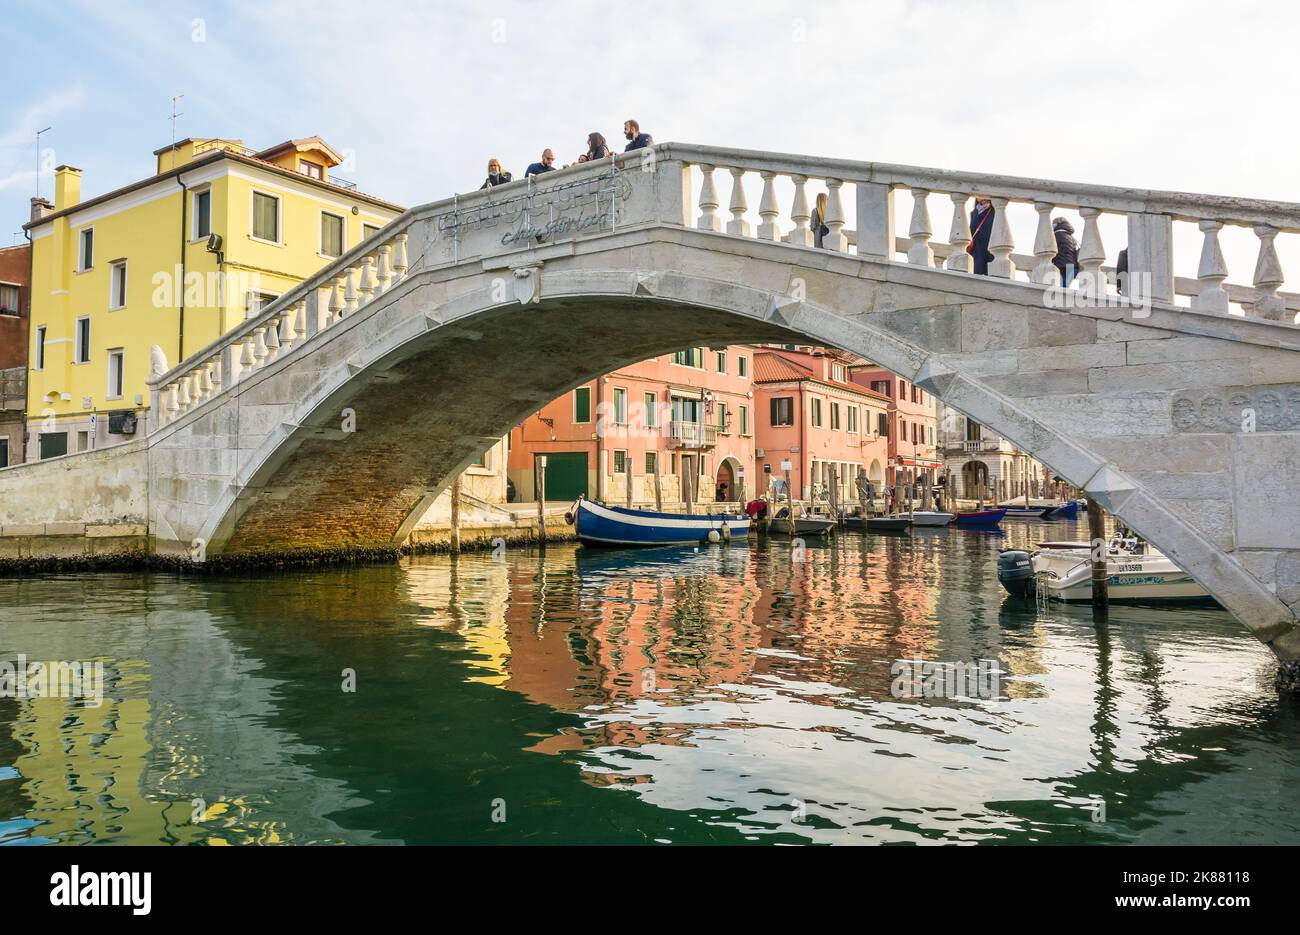 The Vigo bridge in historic centre of Chioggia city, Venetian lagoon, Venice province,northern italy - Europe Stock Photo